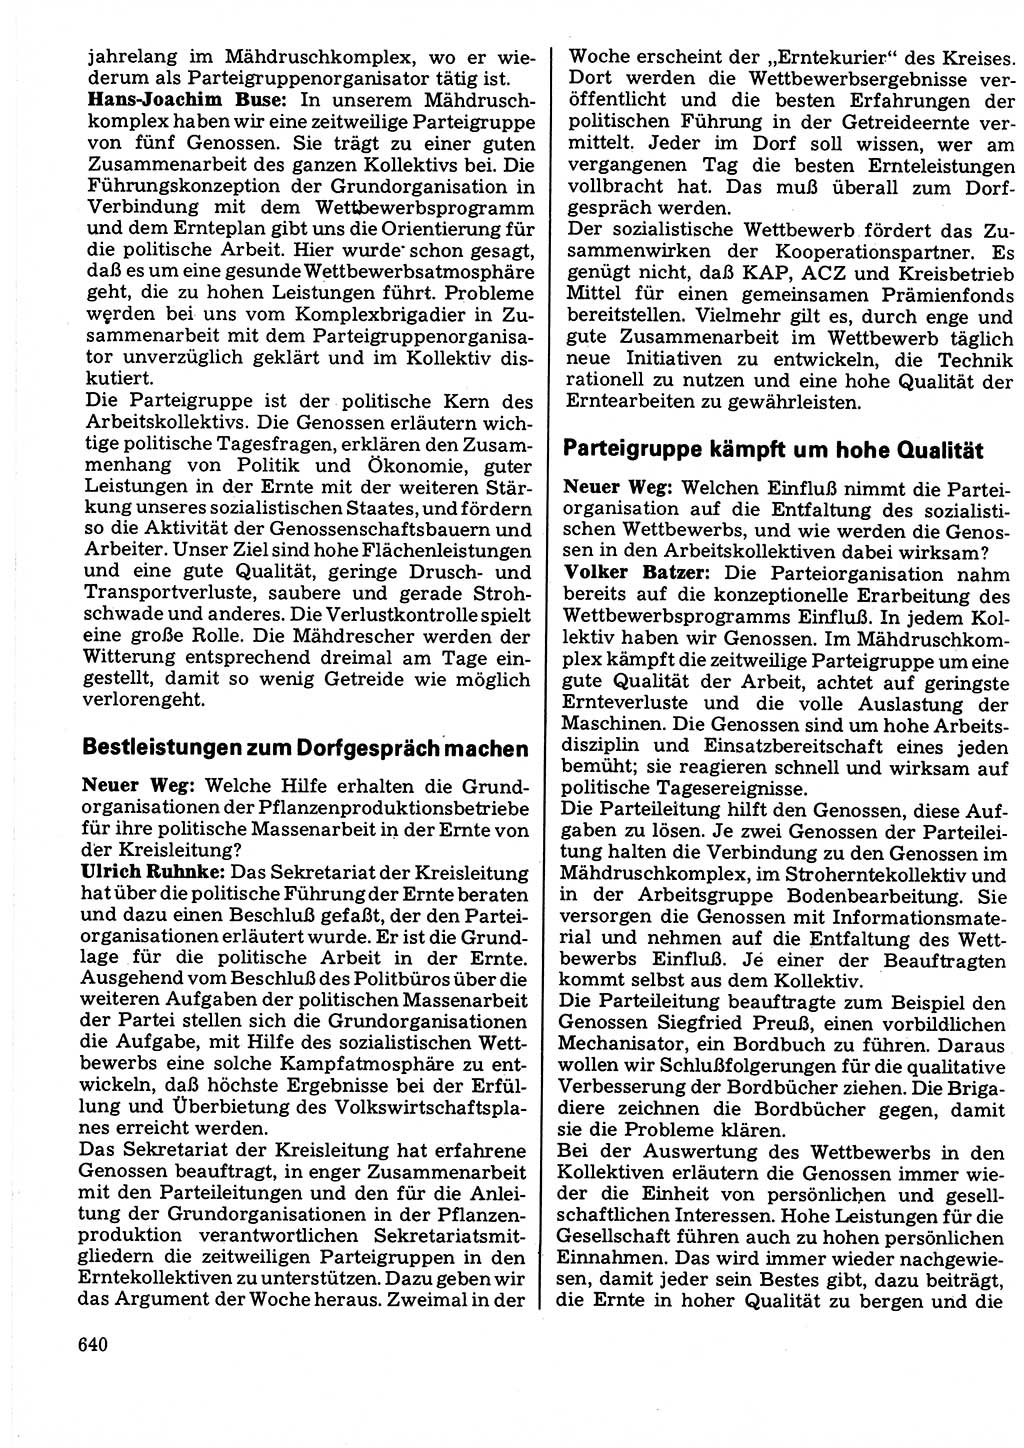 Neuer Weg (NW), Organ des Zentralkomitees (ZK) der SED (Sozialistische Einheitspartei Deutschlands) für Fragen des Parteilebens, 32. Jahrgang [Deutsche Demokratische Republik (DDR)] 1977, Seite 640 (NW ZK SED DDR 1977, S. 640)